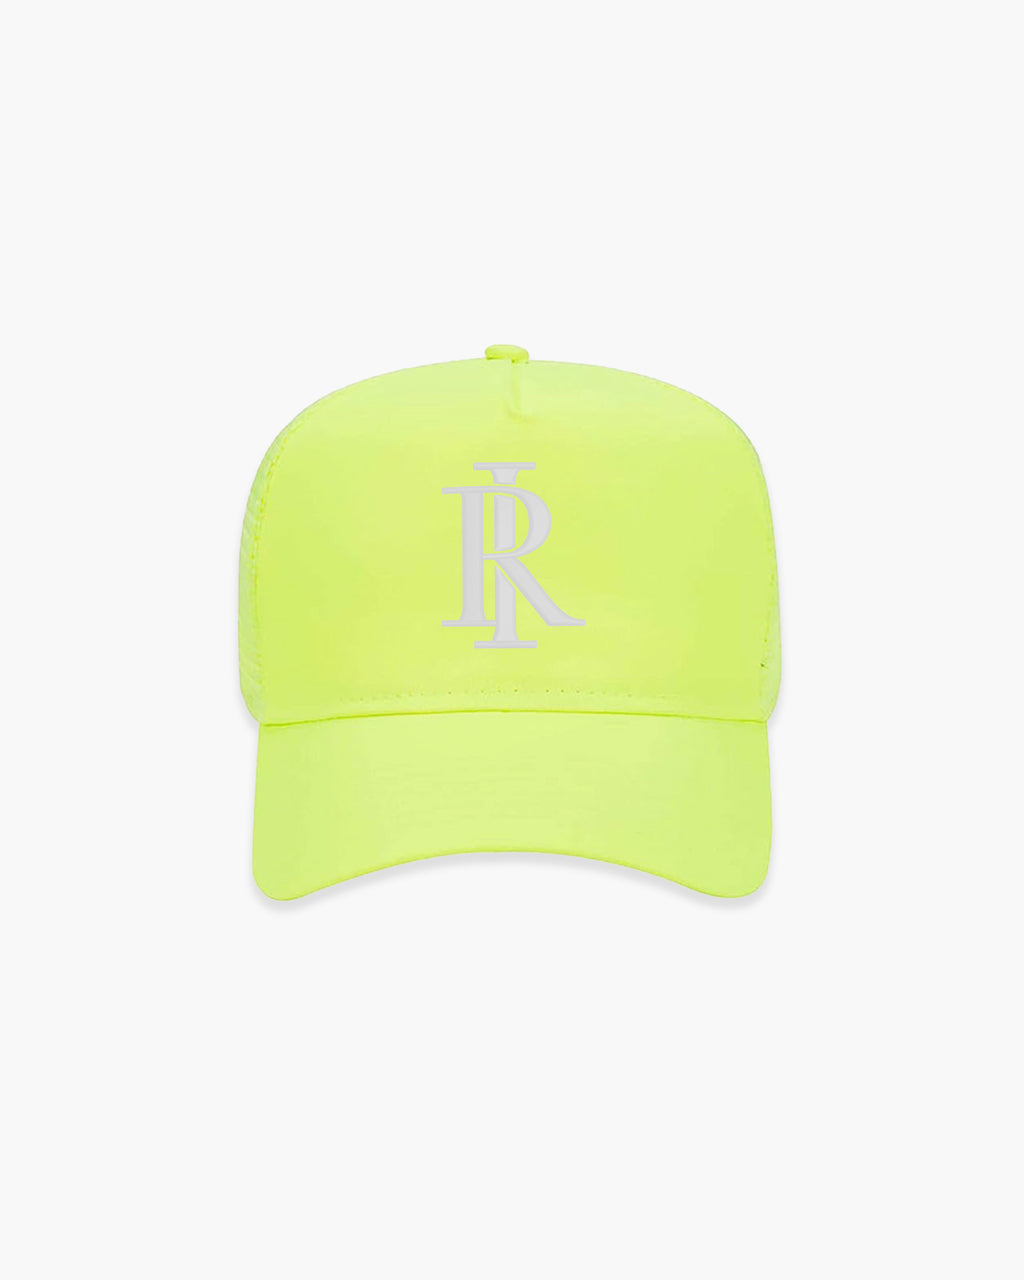 Monogram Trucker Hat - Neon